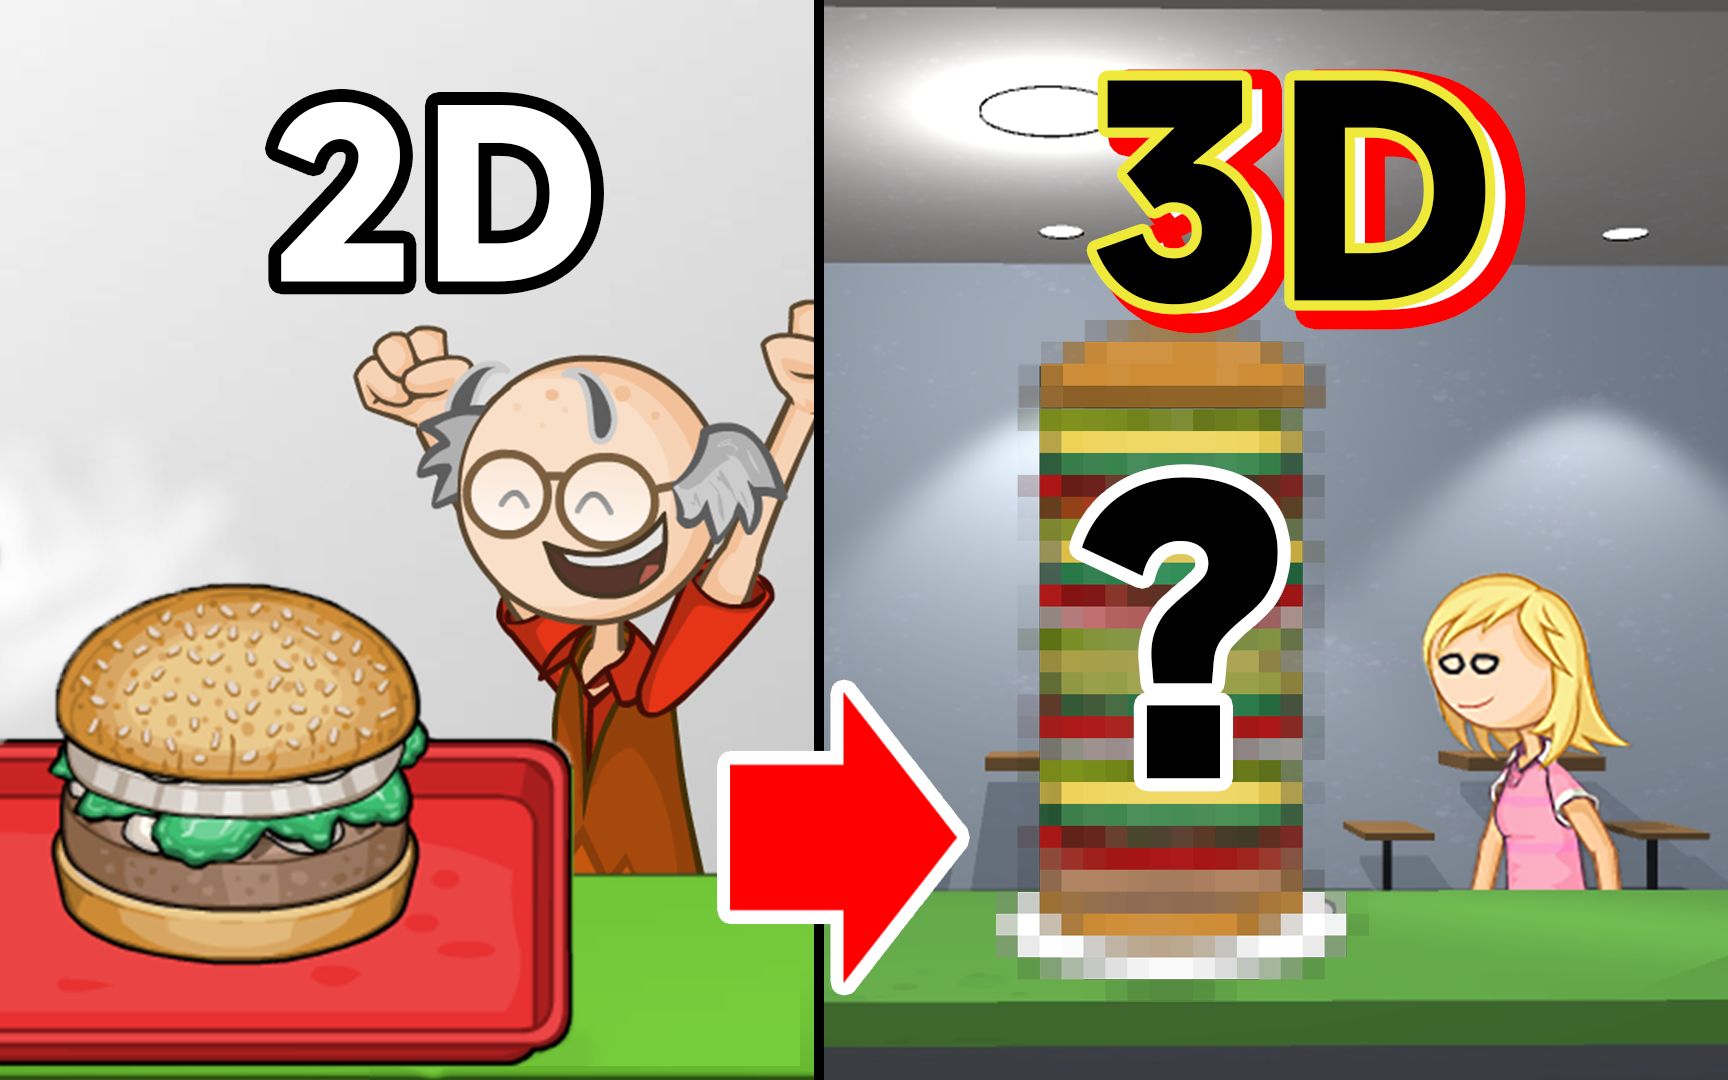 自制老爹汉堡店, 但是变成了3D还加了隐藏人物…